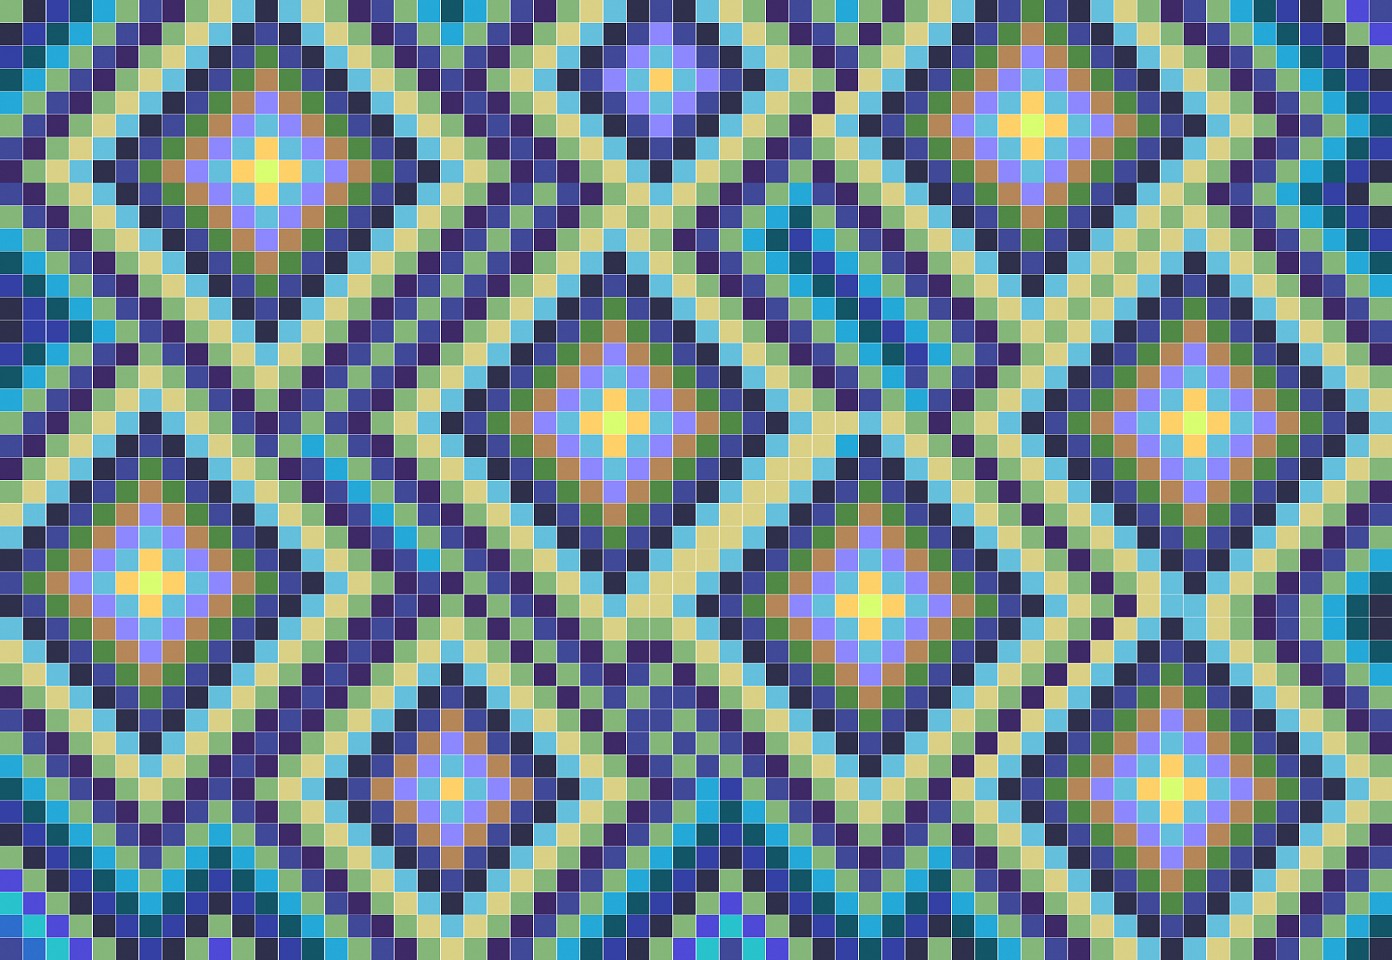 Dane Albert, Color Blocks #32, 2023
Acrylic on canvas (Concept), 48 x 60 in. (121.9 x 152.4 cm)
Series of colored blocks in multiple configurations
DA.cb-2023-032